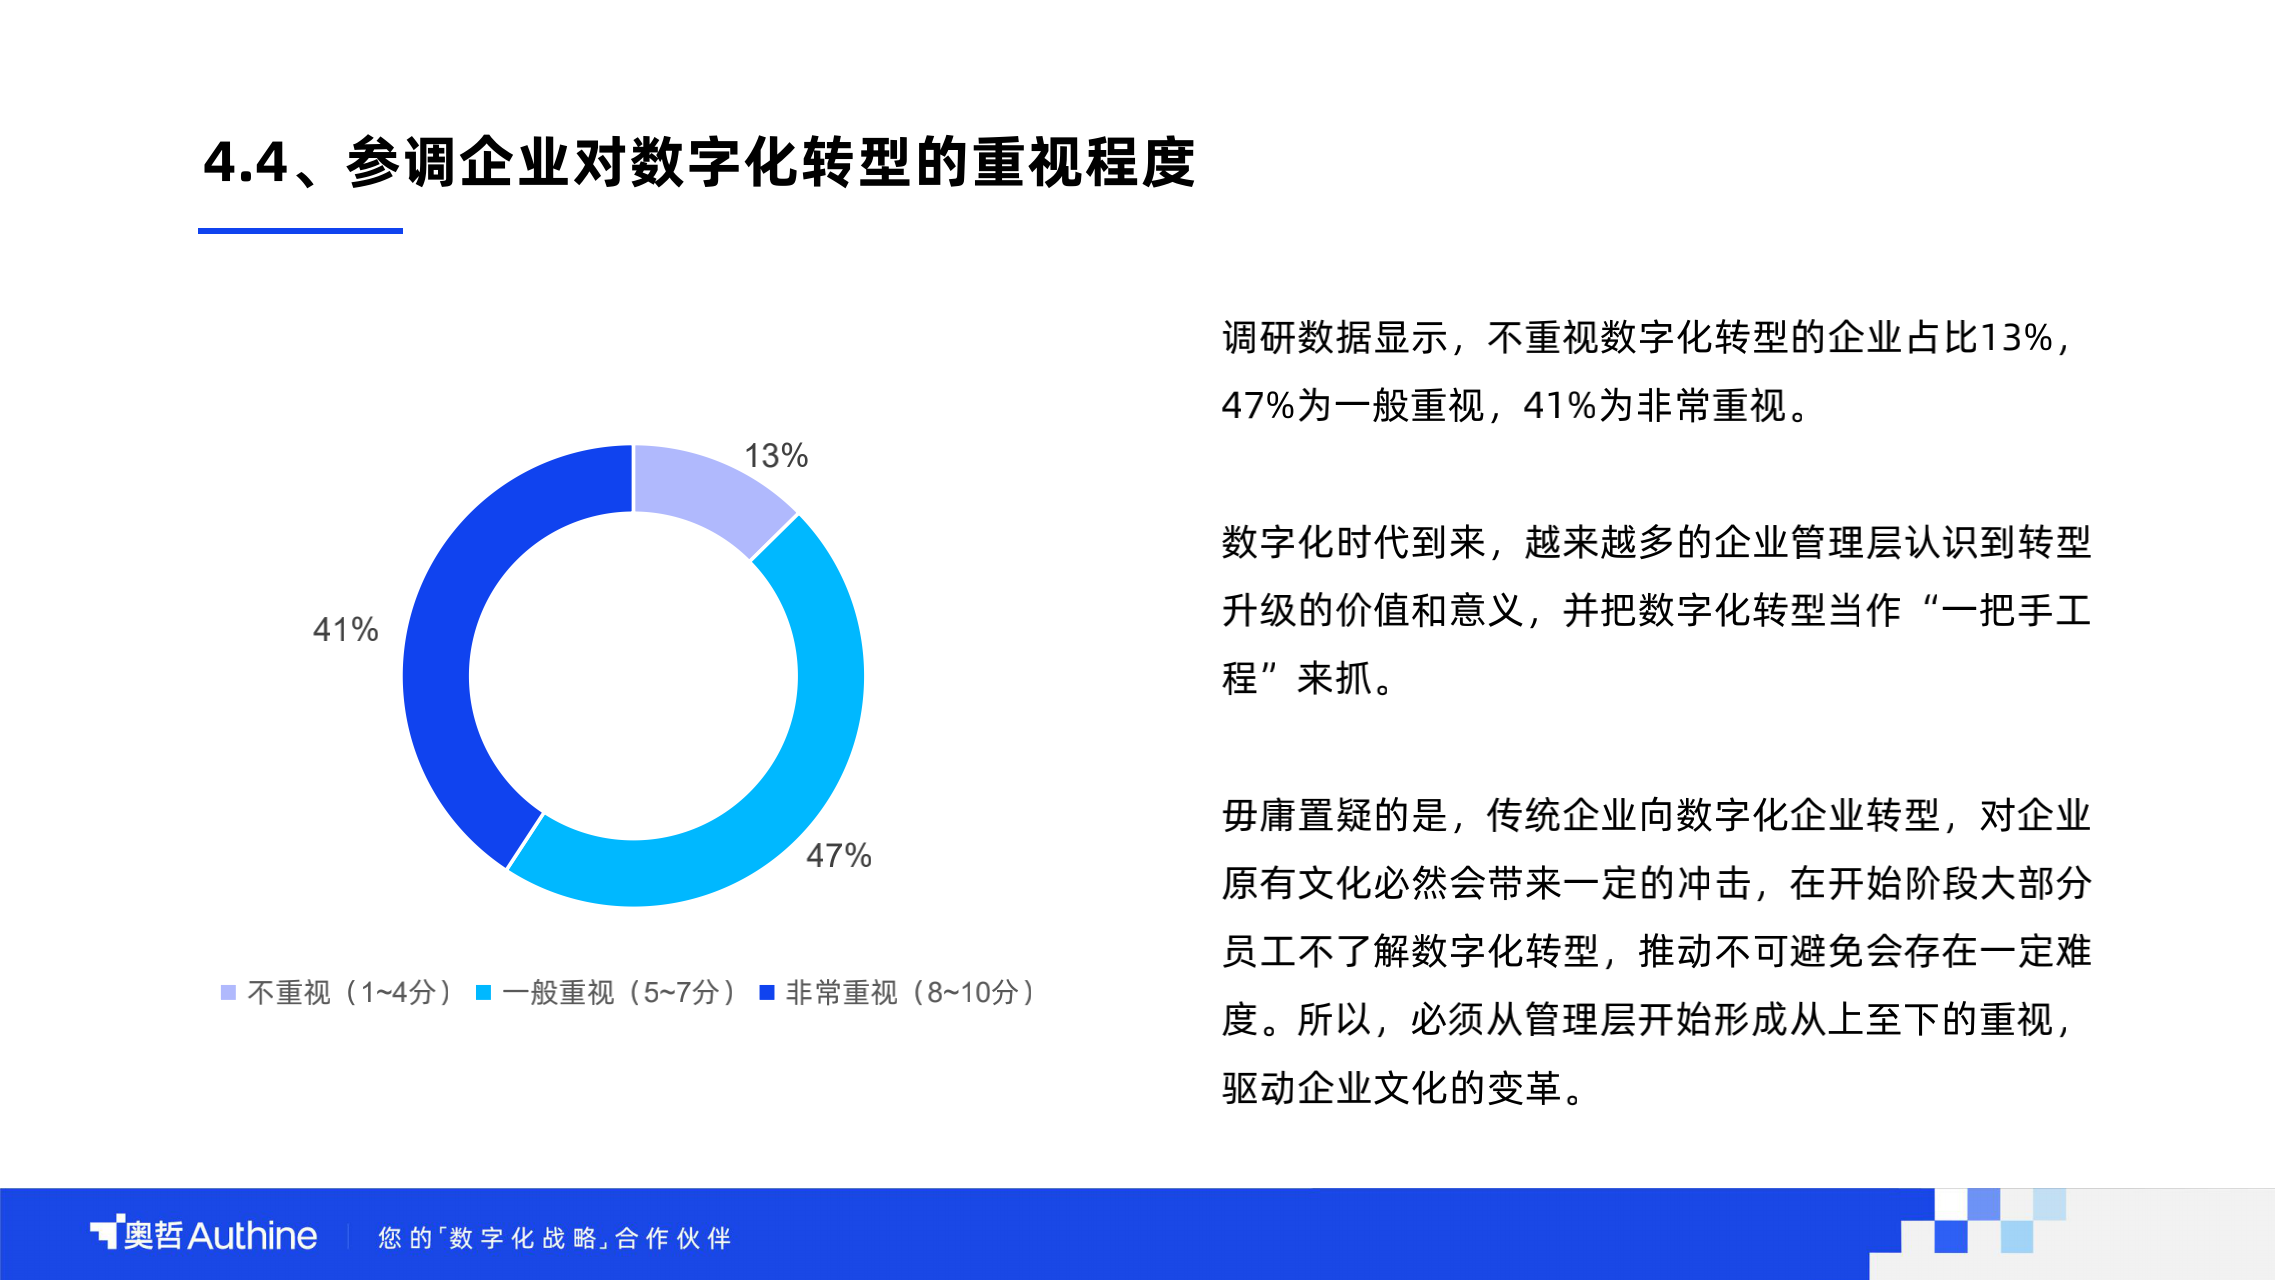 奥哲2021中国企业数字化人才发展调研报告